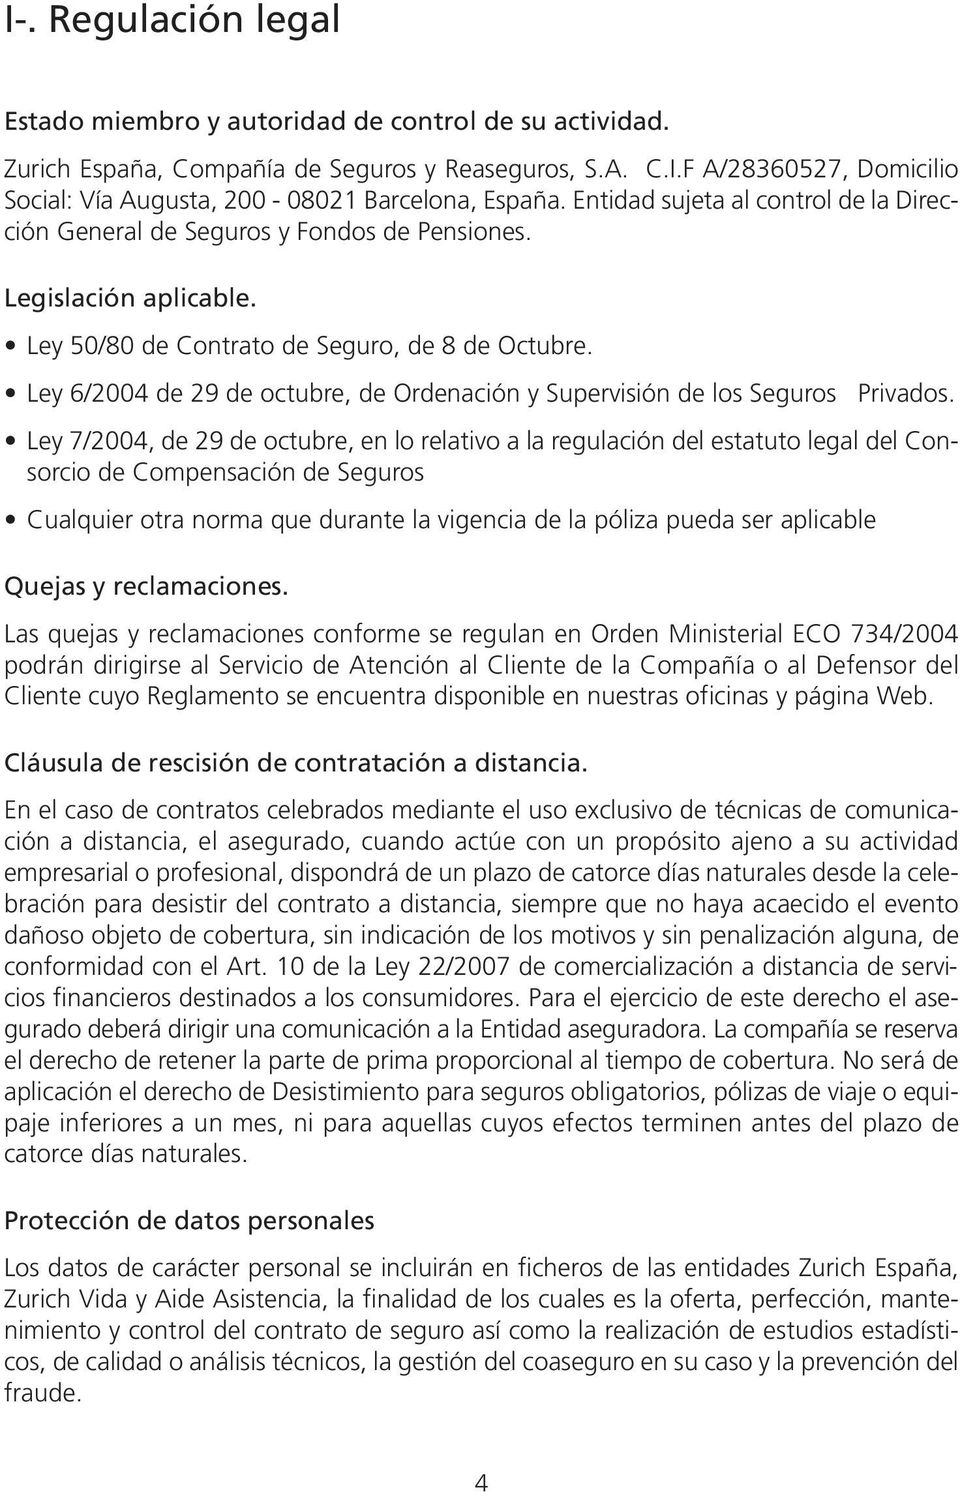 Ley 6/2004 de 29 de octubre, de Ordenación y Supervisión de los Seguros Privados.